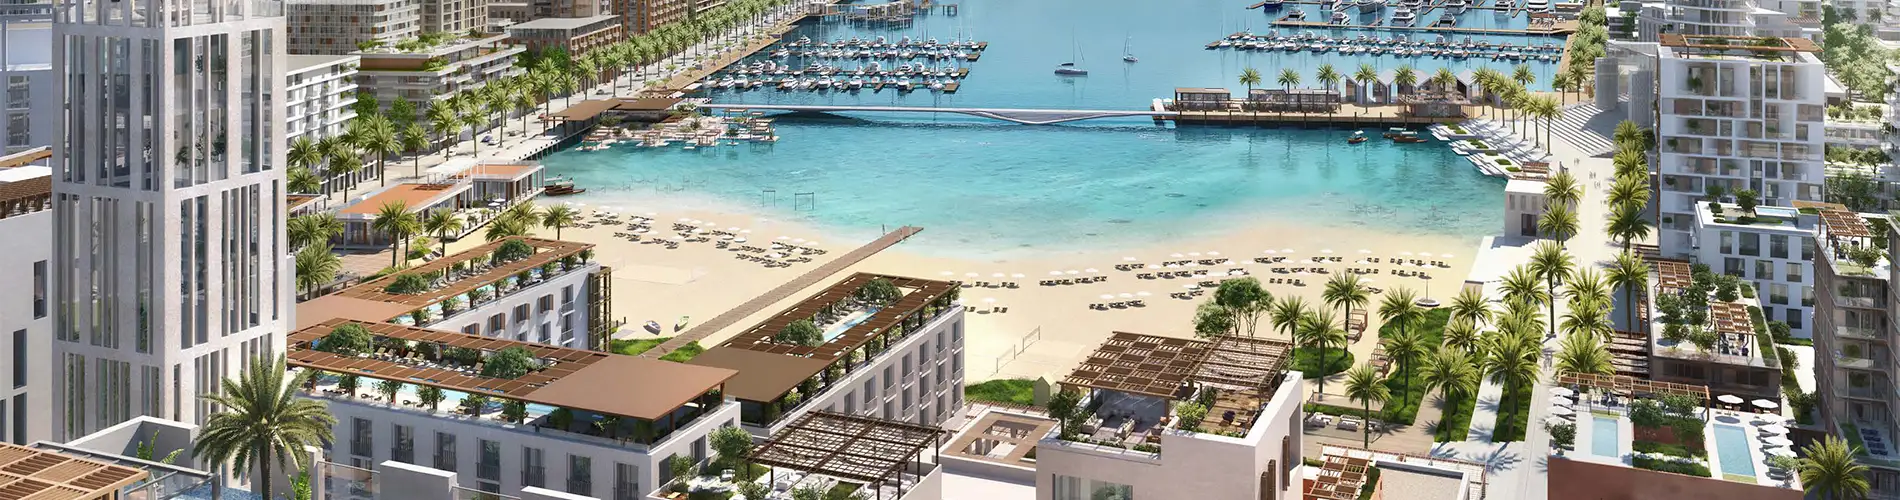 ميناء راشد من إعمار العقارية في ميناء راشد، دبي